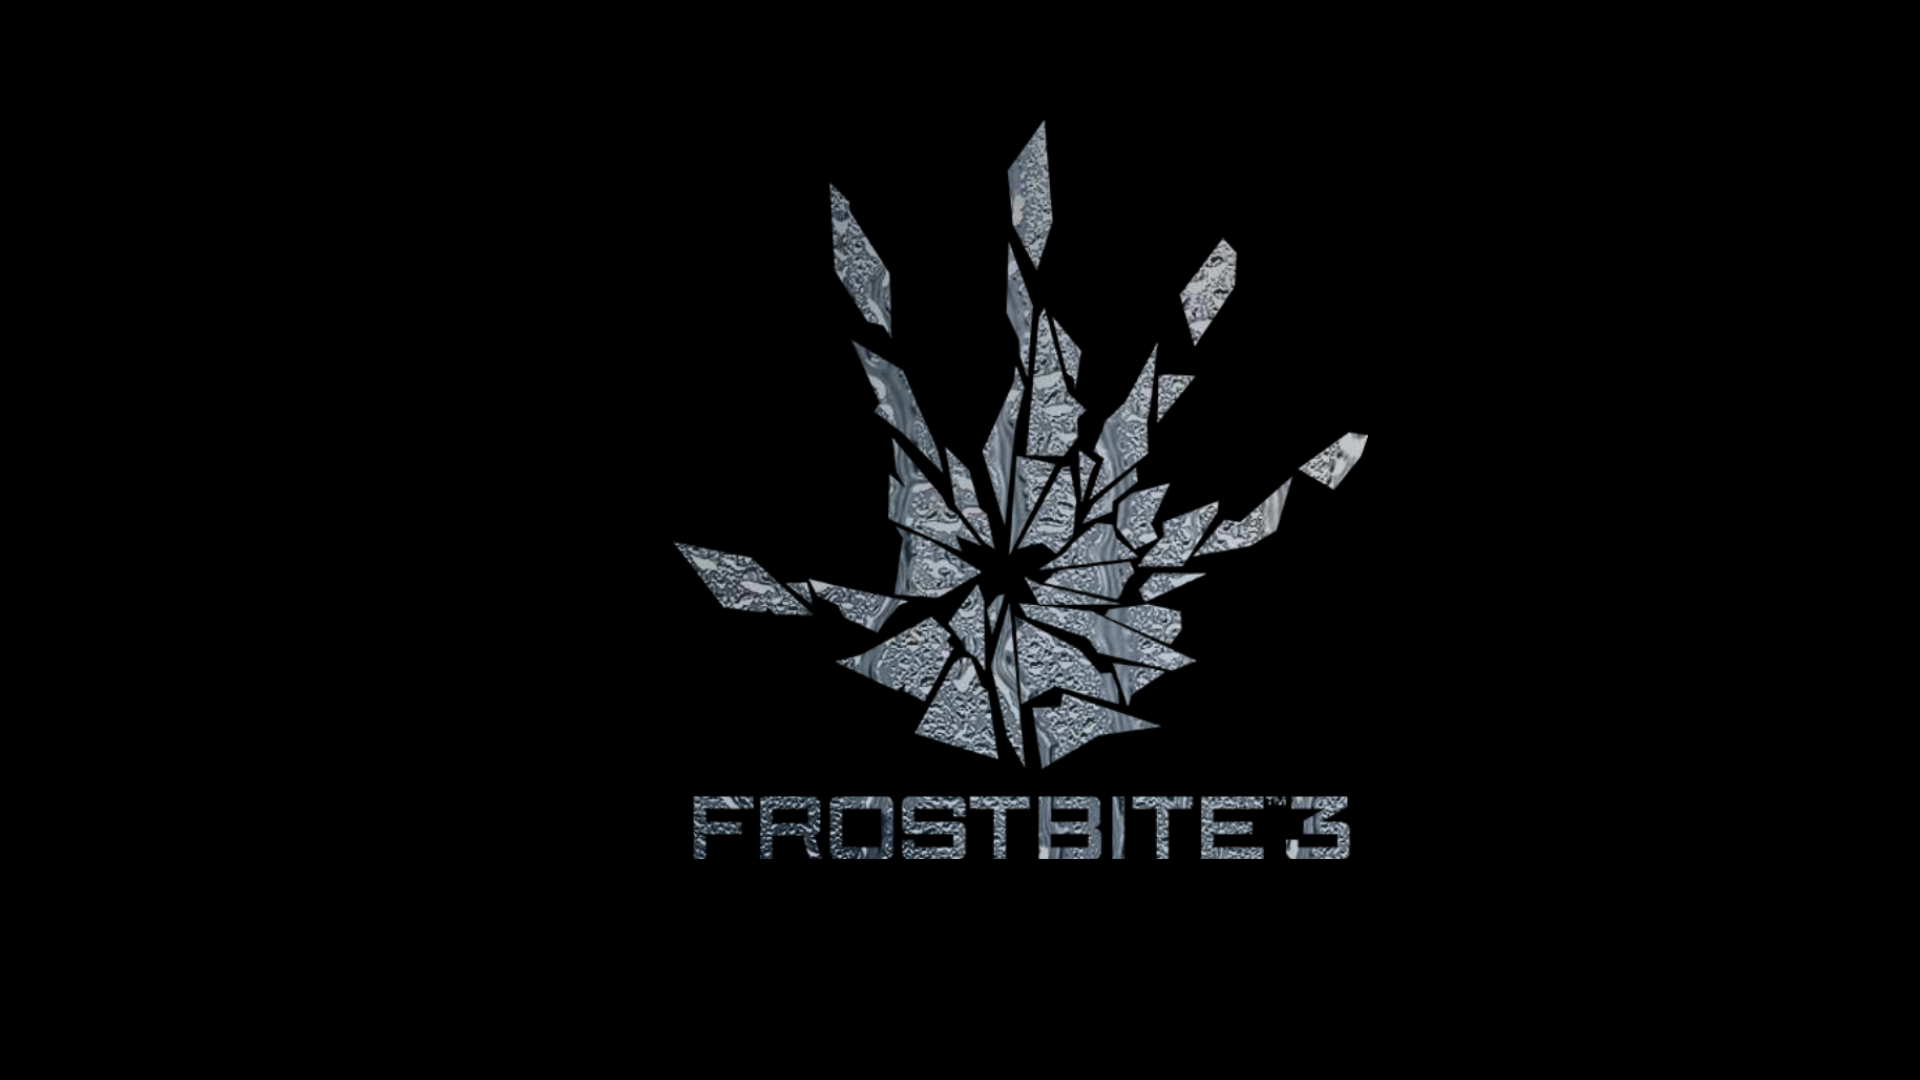 Frostbite Wallpaper Battlefield3